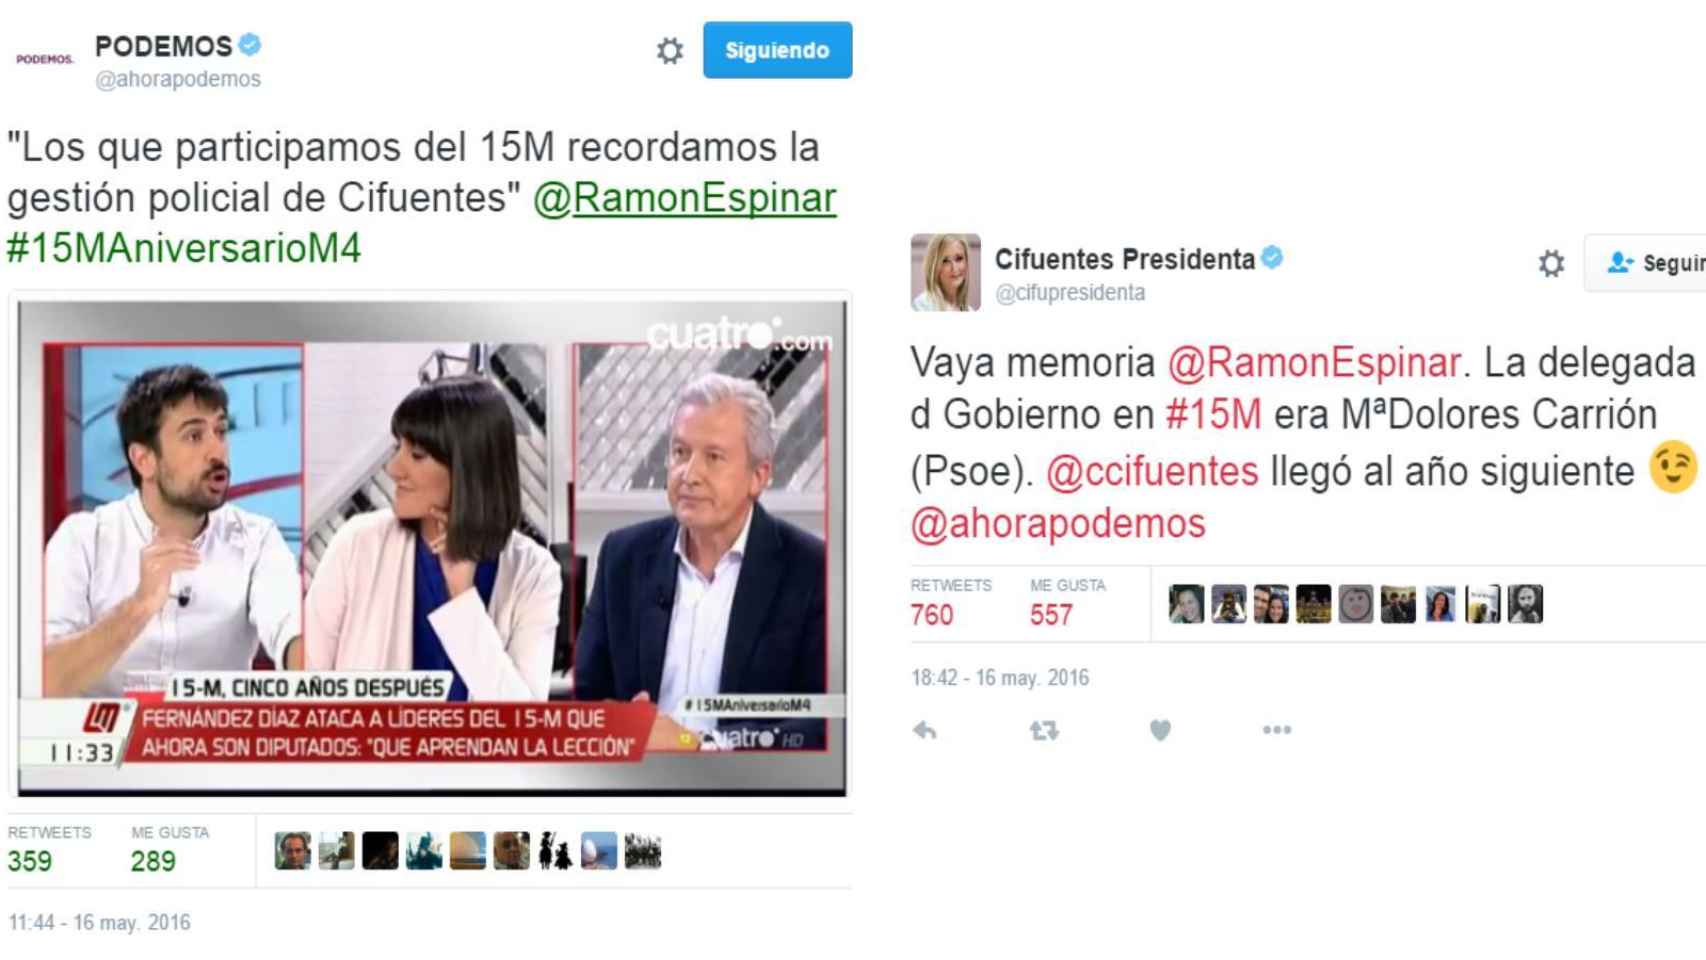 El intercambio de tuits entre las cuentas de Podemos y el equipo de Cifuentes